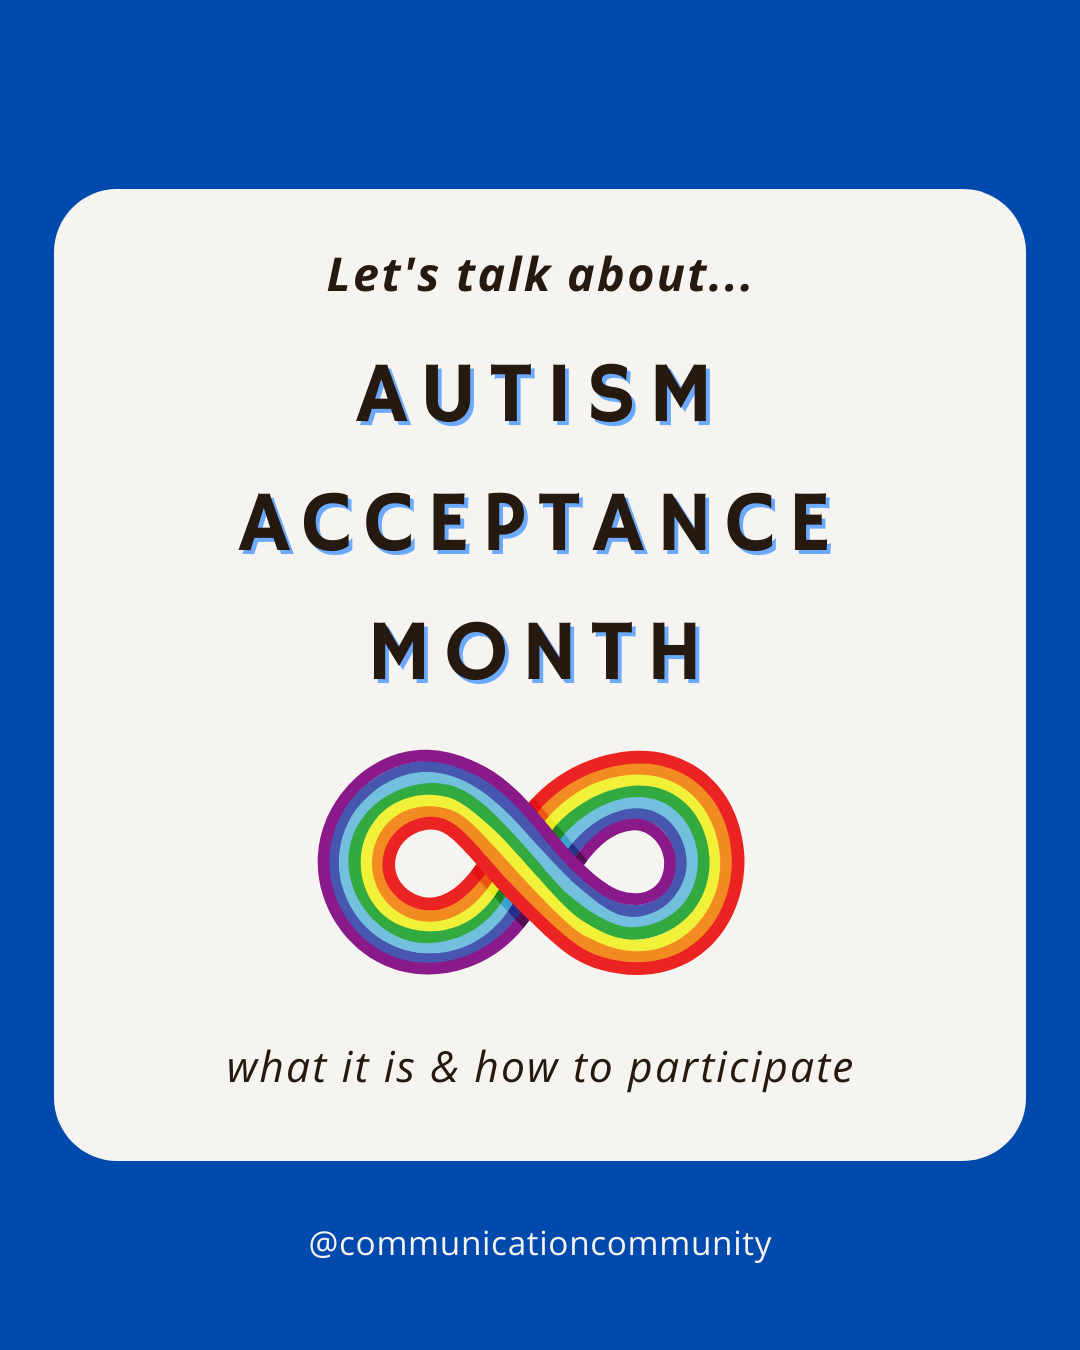 Autism Acceptance Month: April